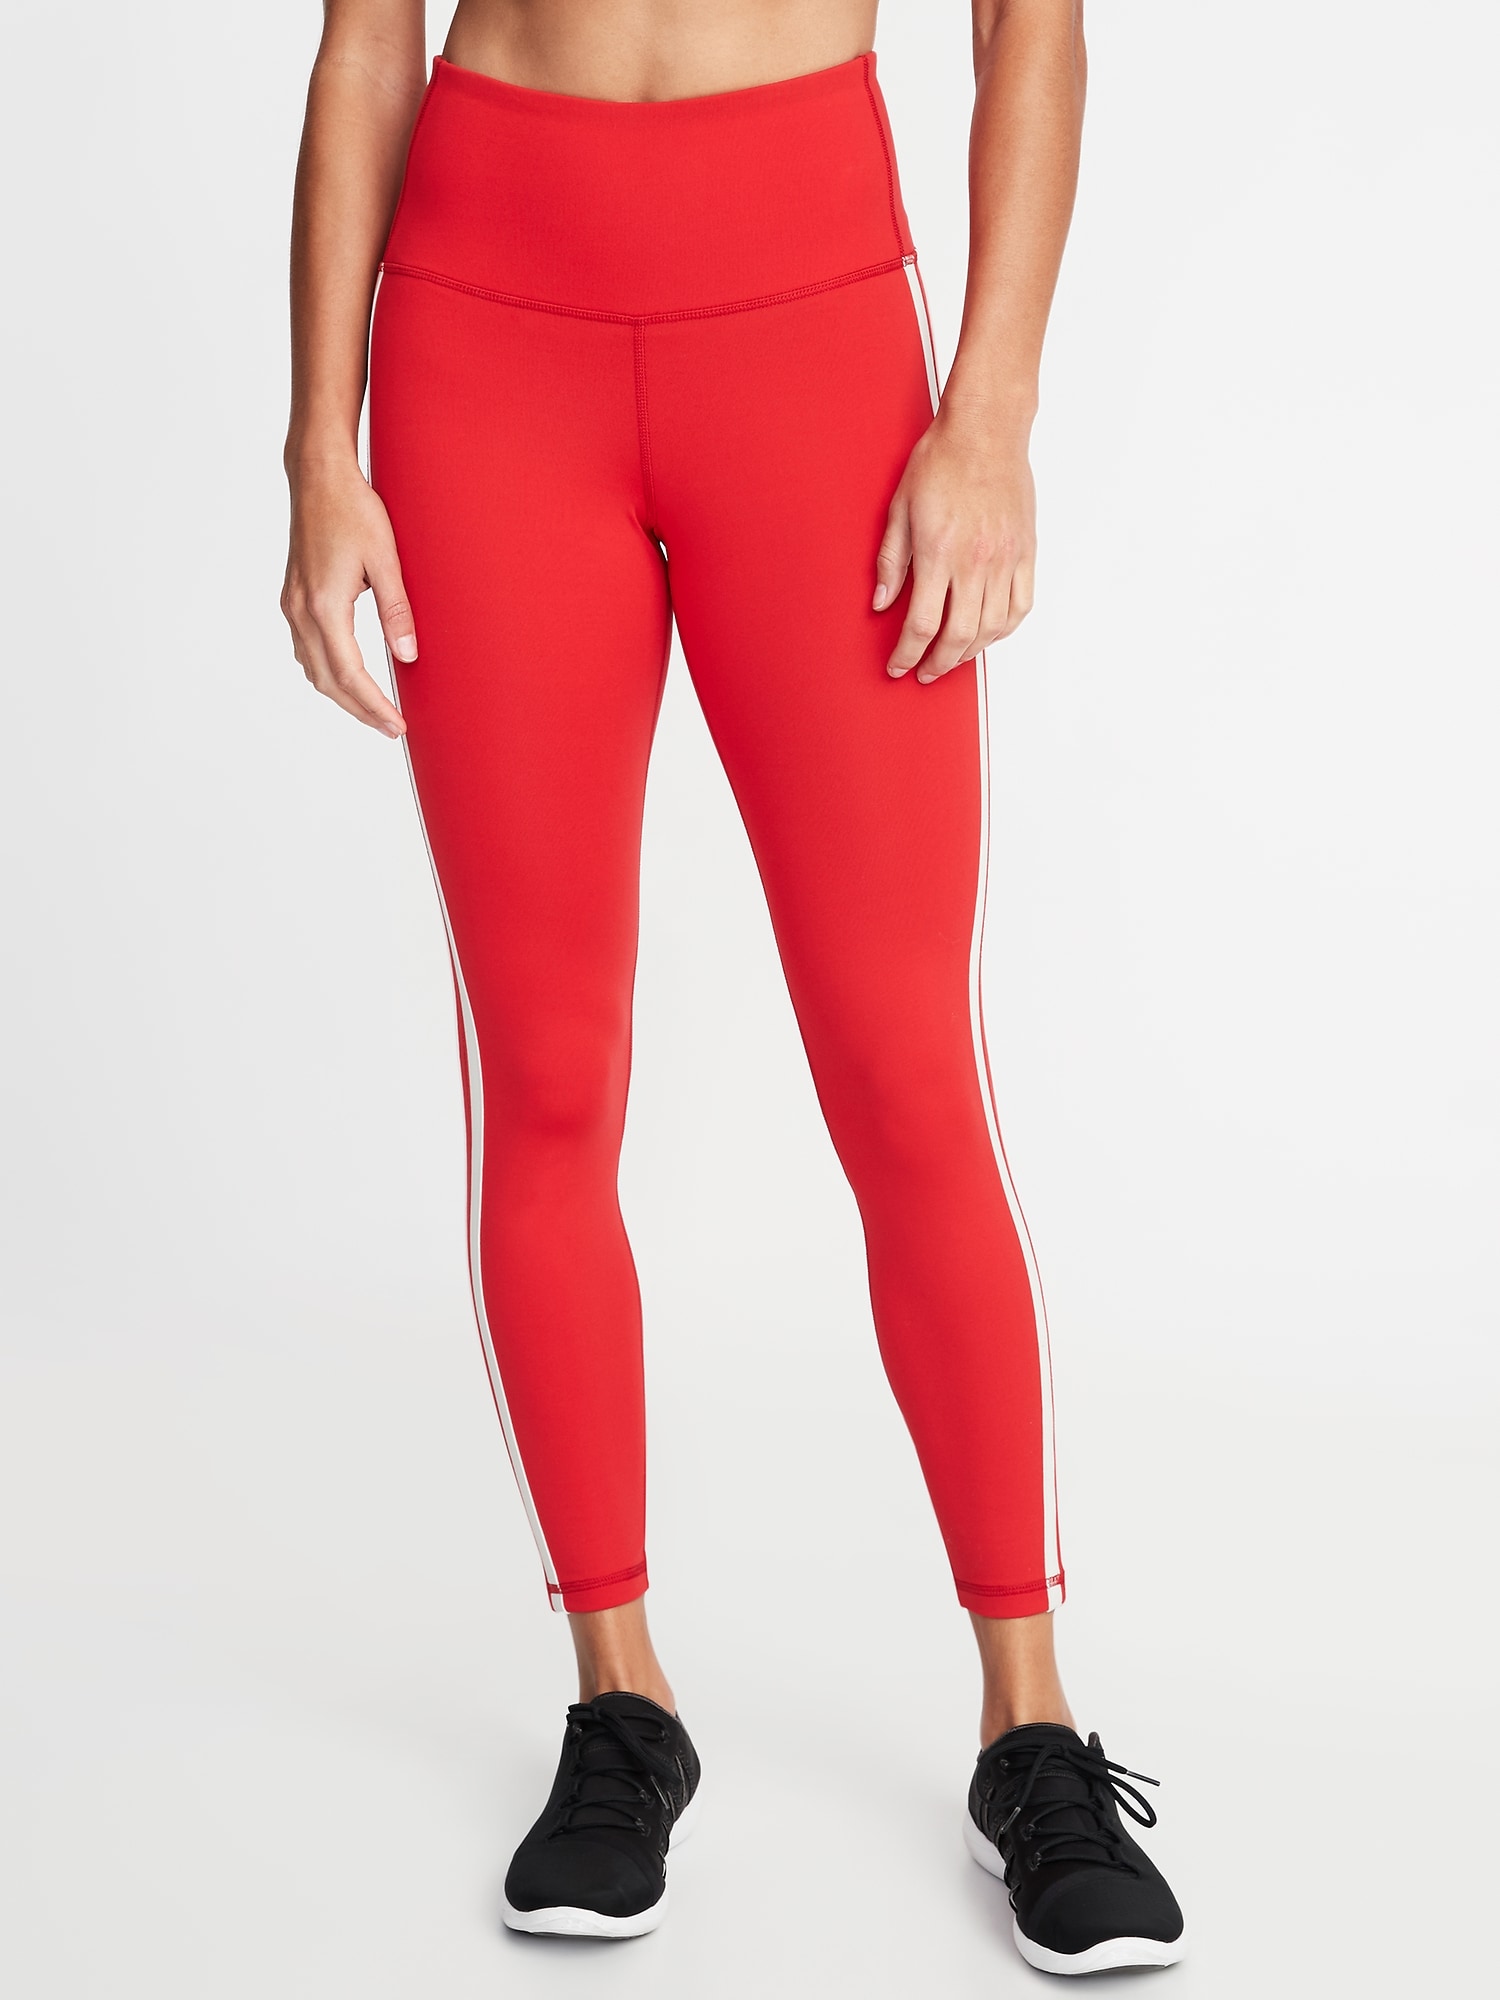 Gap Fit Black Leggings Capri Pants Womens Sz XL Side Brand Name Stripe